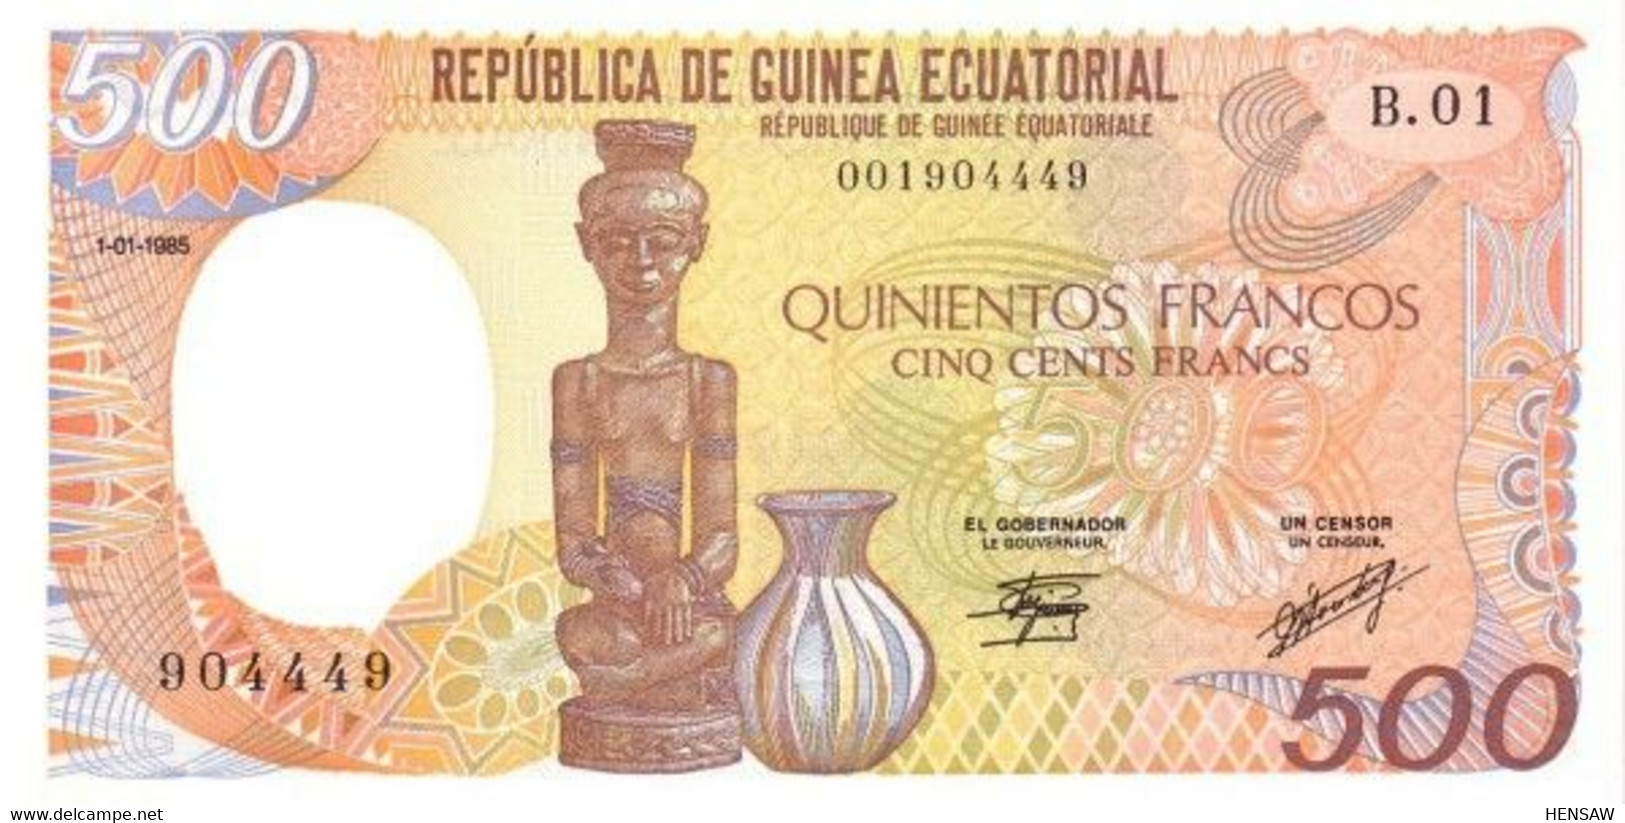 EQUATORIAL GUINEA 500 FRANCS 1985 P 20 UNC SC NUEVO - Aequatorial-Guinea